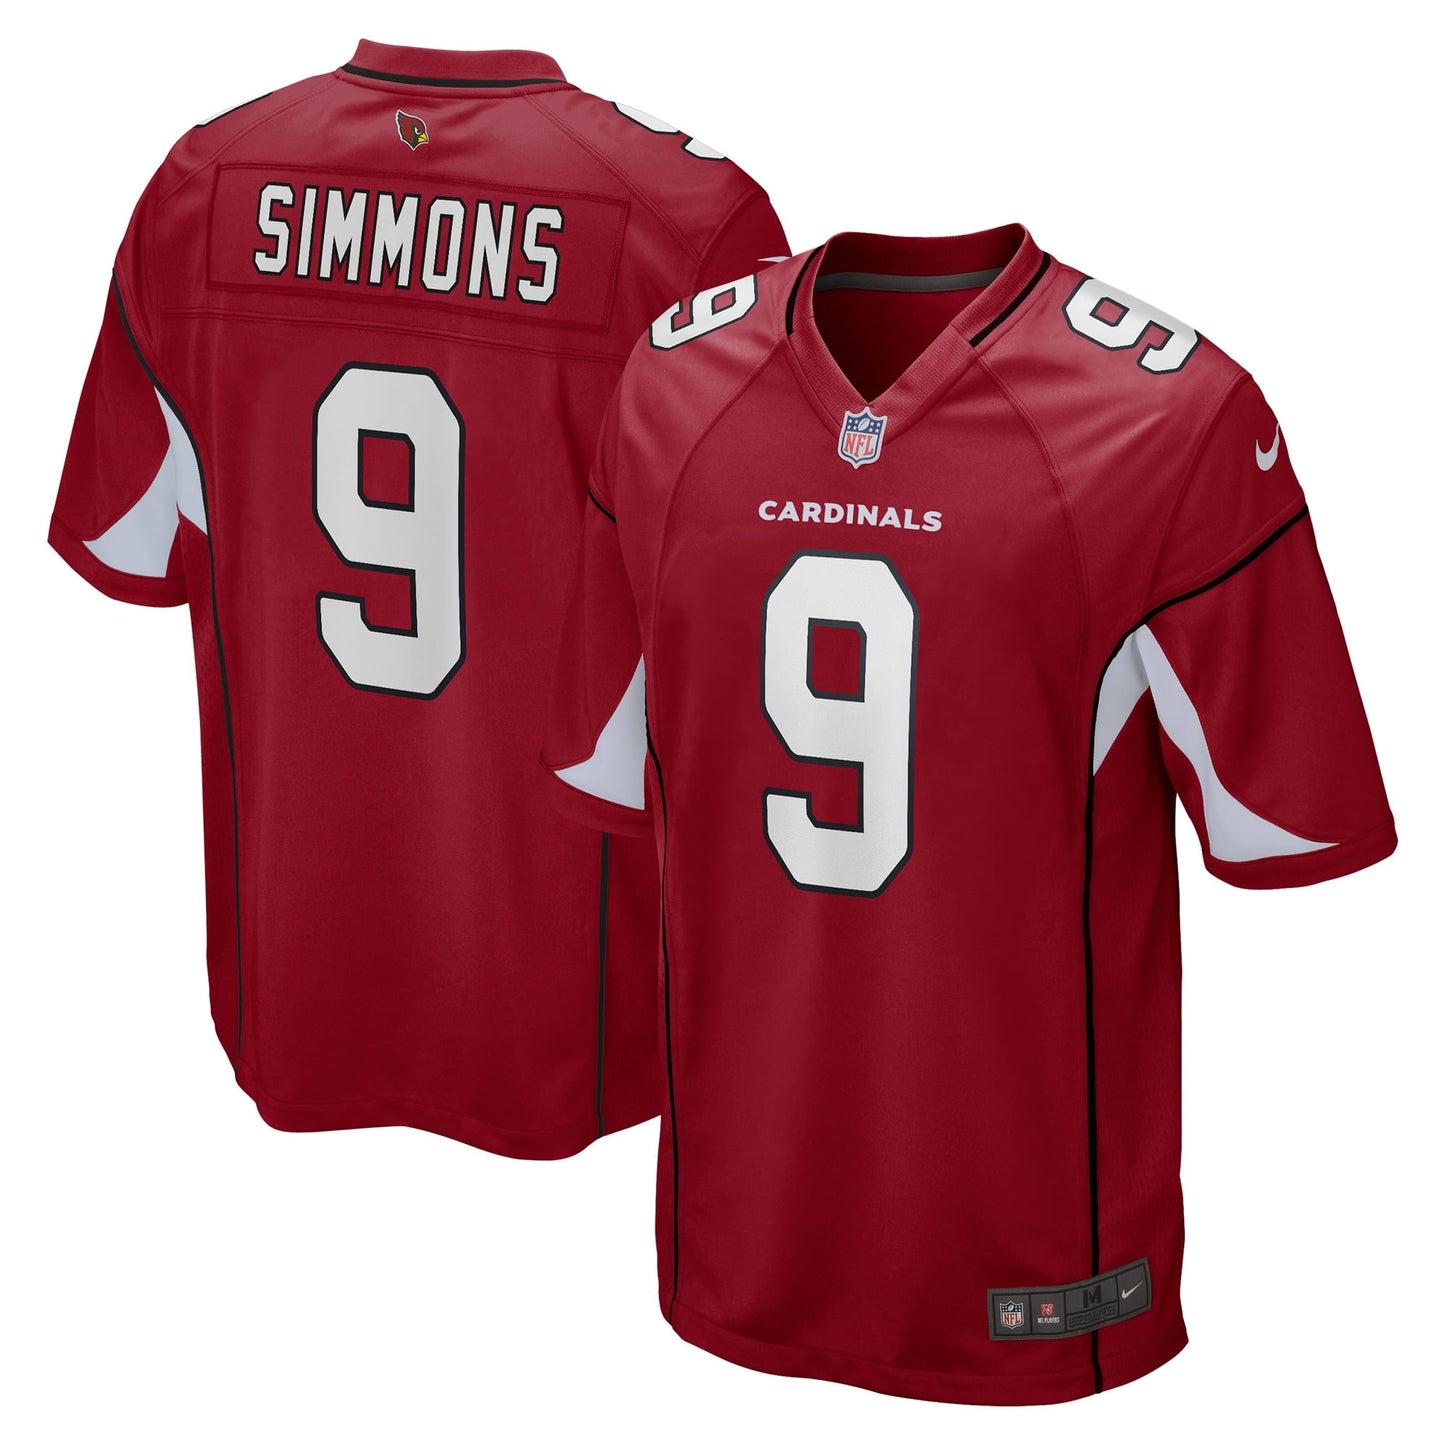 Men's Nike Isaiah Simmons Cardinal Arizona Cardinals Game Player Jersey